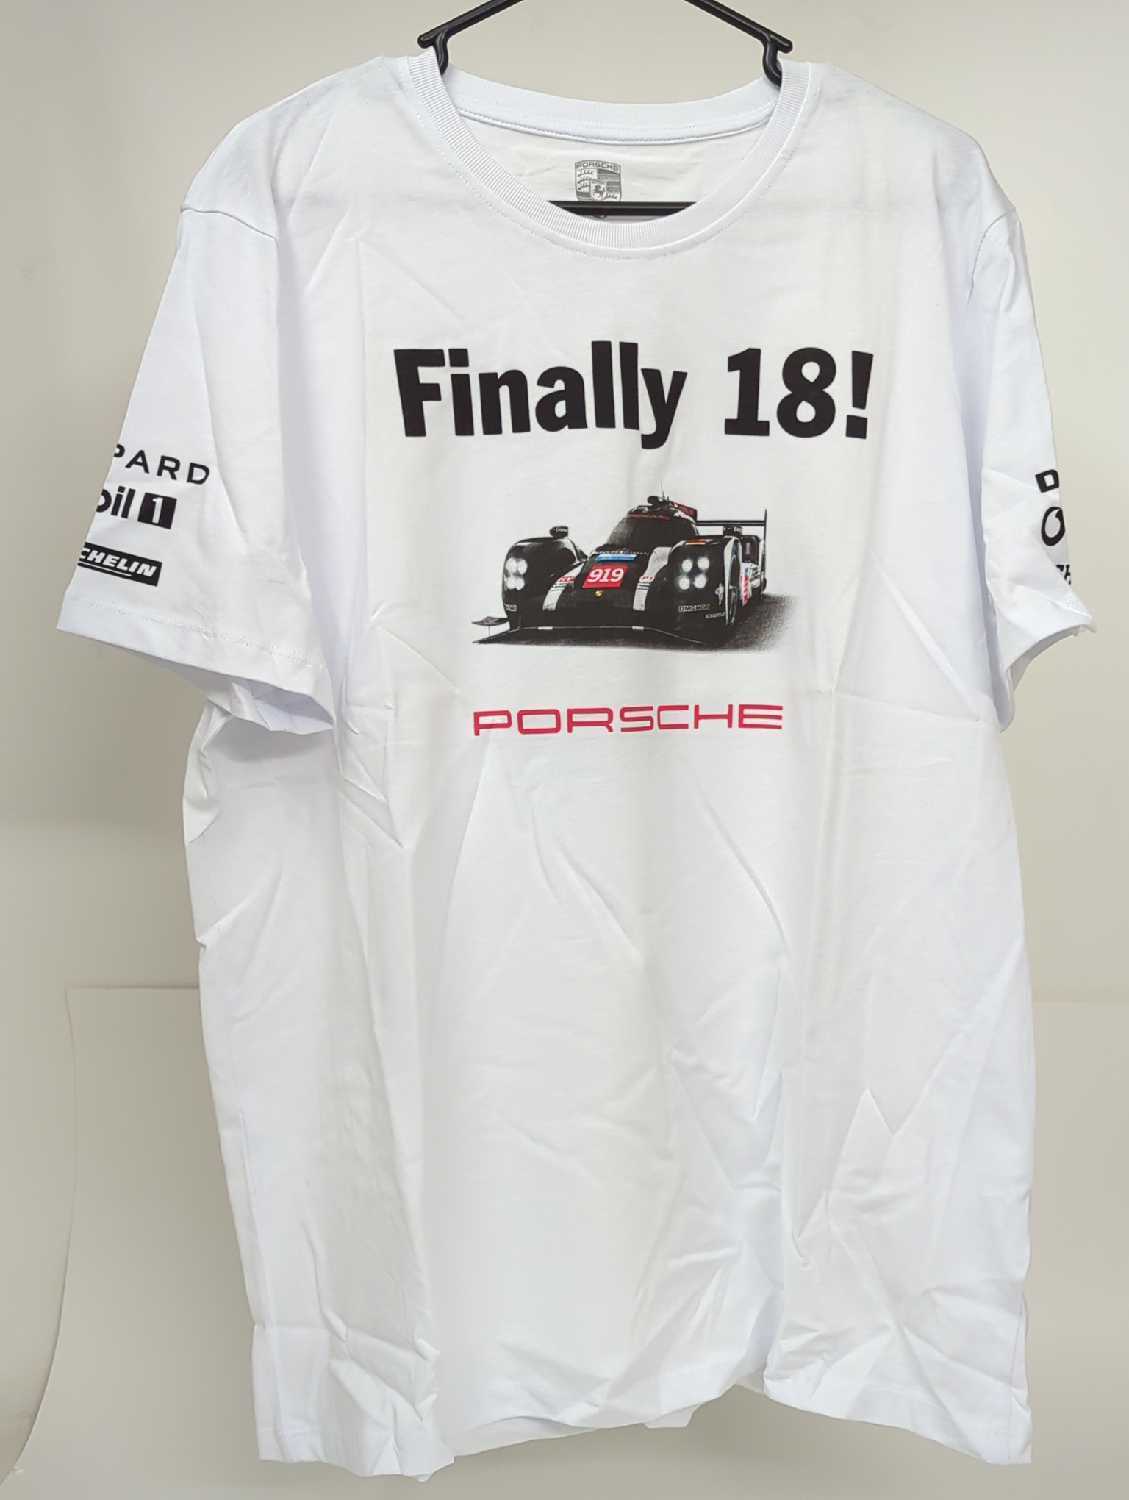 New OEM Genuine Porsche Unisex XL T-Shirt 18th Le Mans Win White WAP181XXL0H